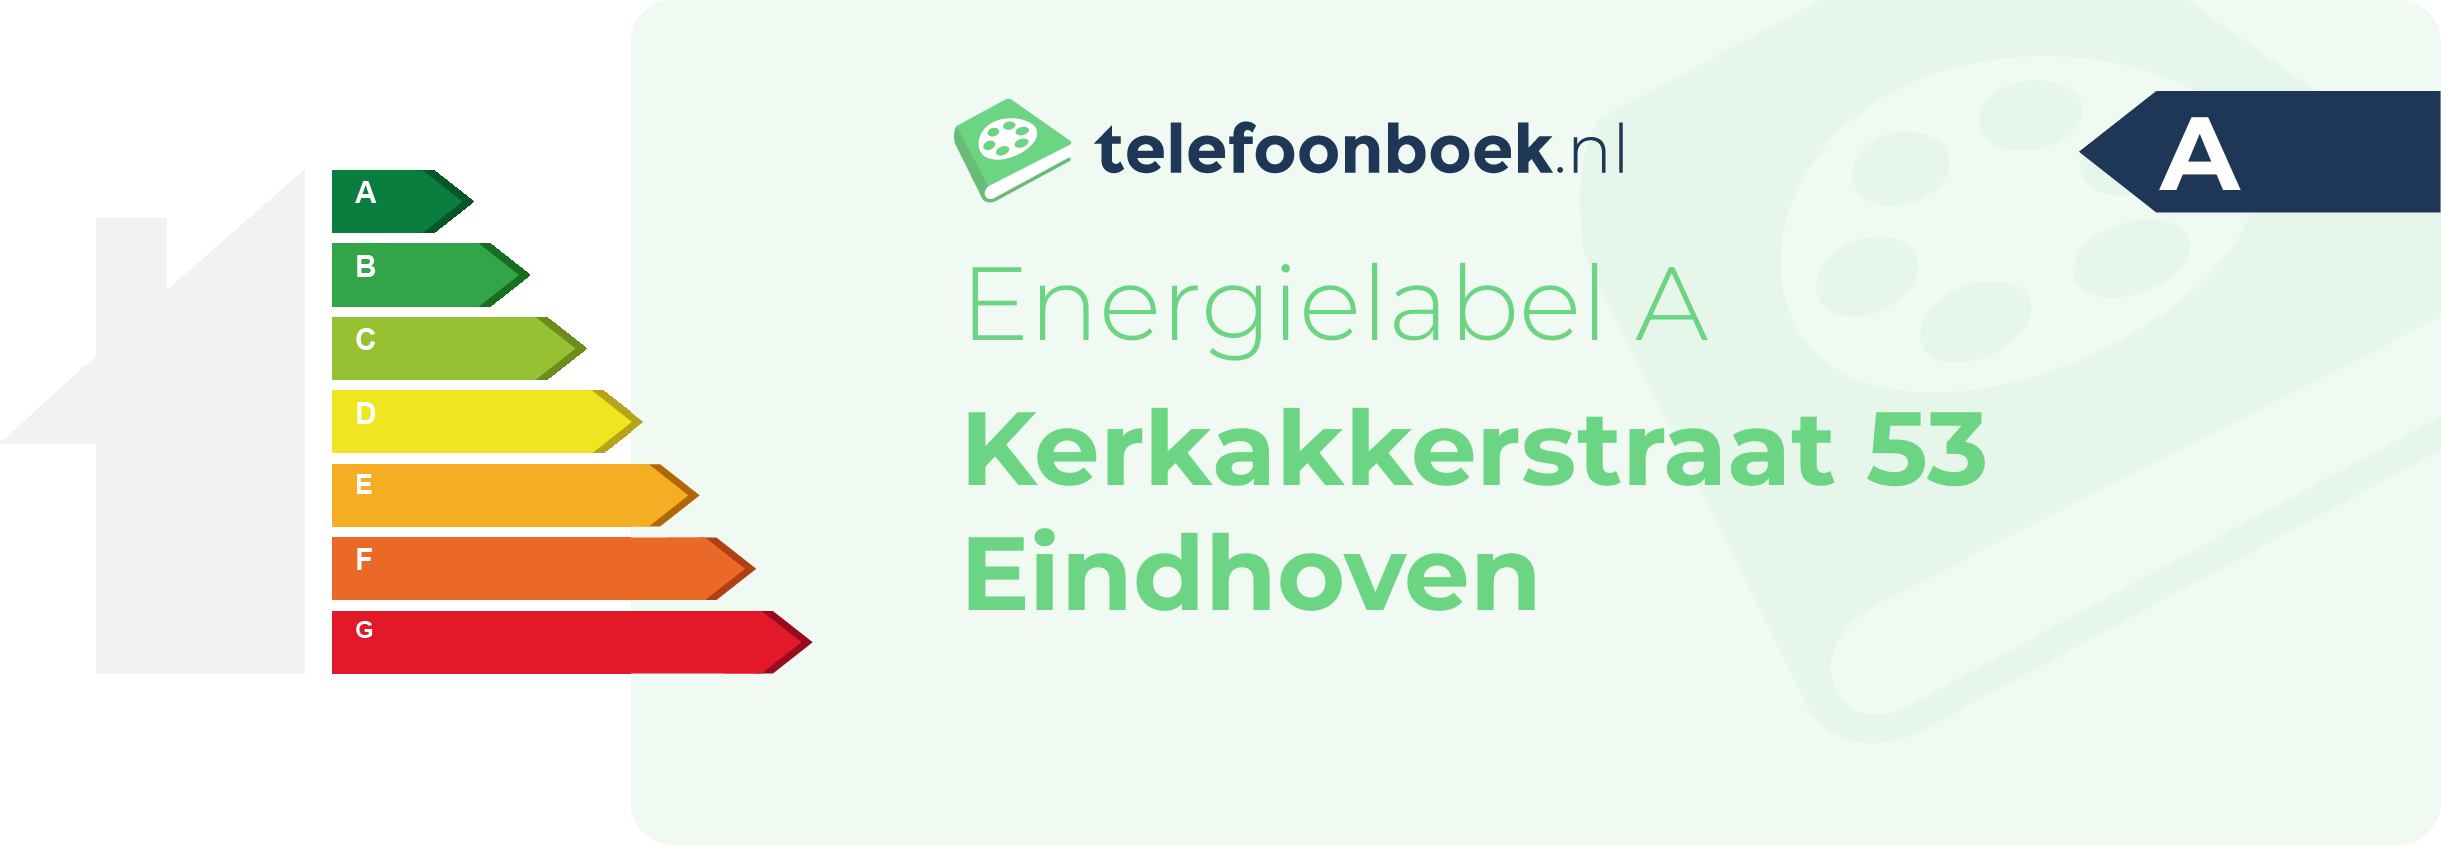 Energielabel Kerkakkerstraat 53 Eindhoven